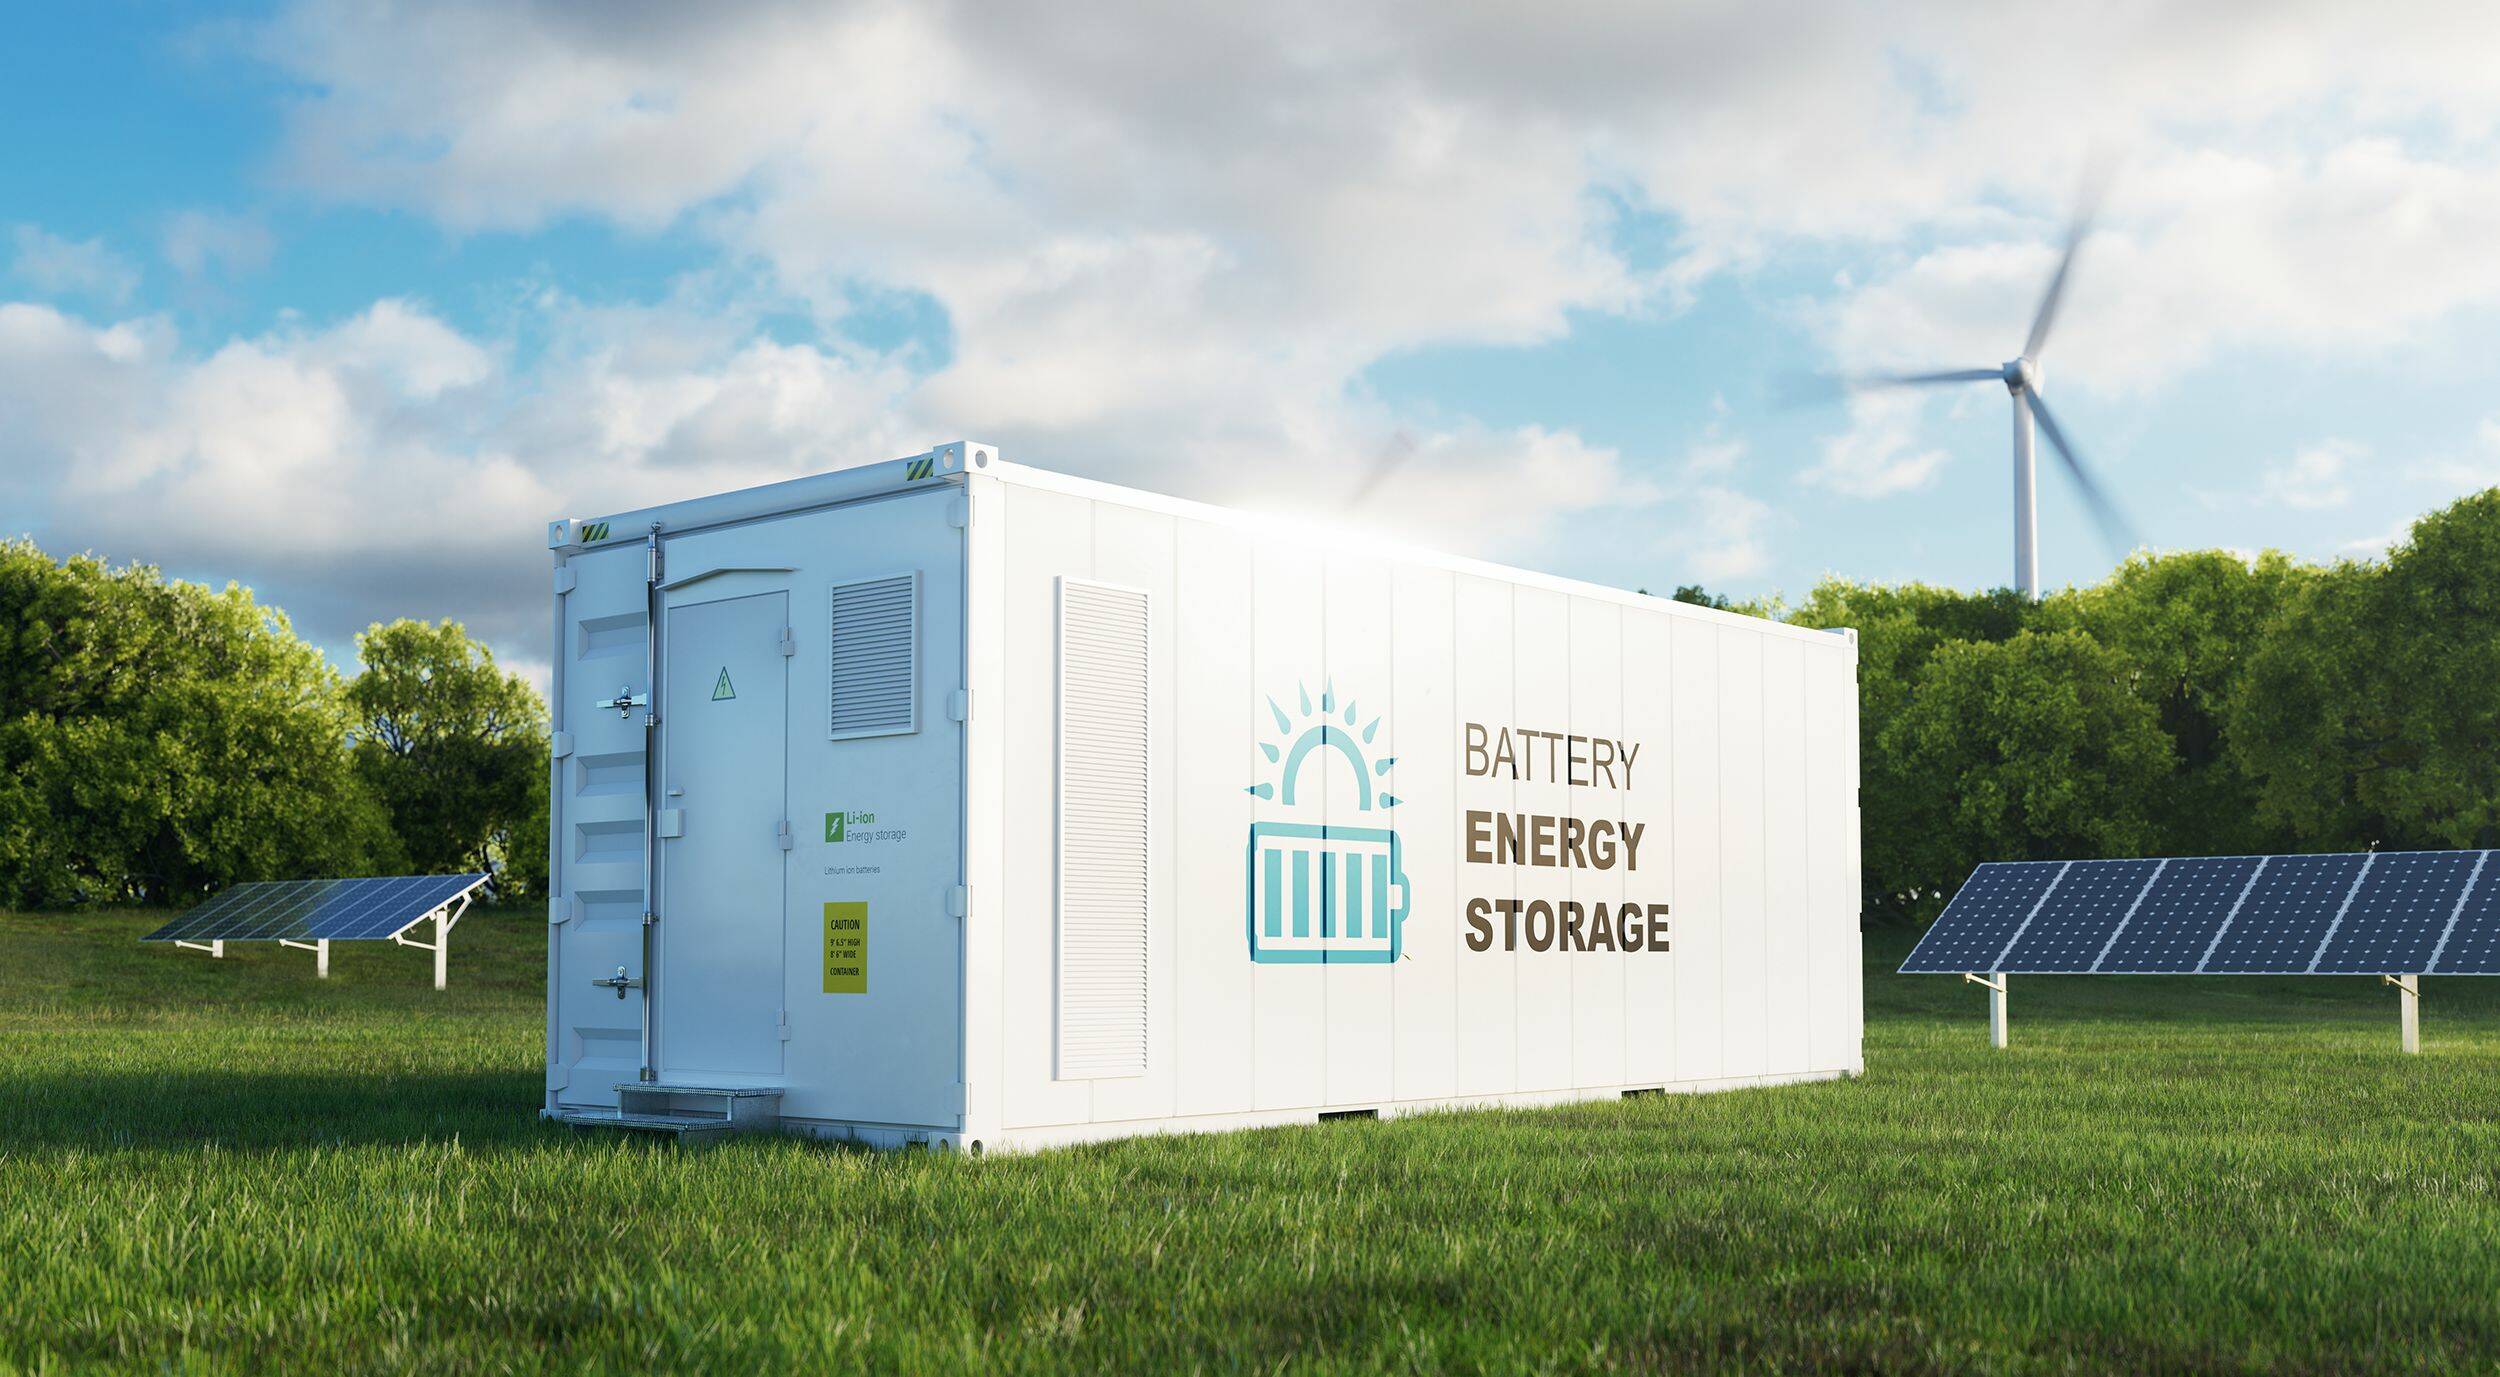 Fotografische illustratie van een batterijcontainer met op de achtergond zonnepanelen en windmolens.